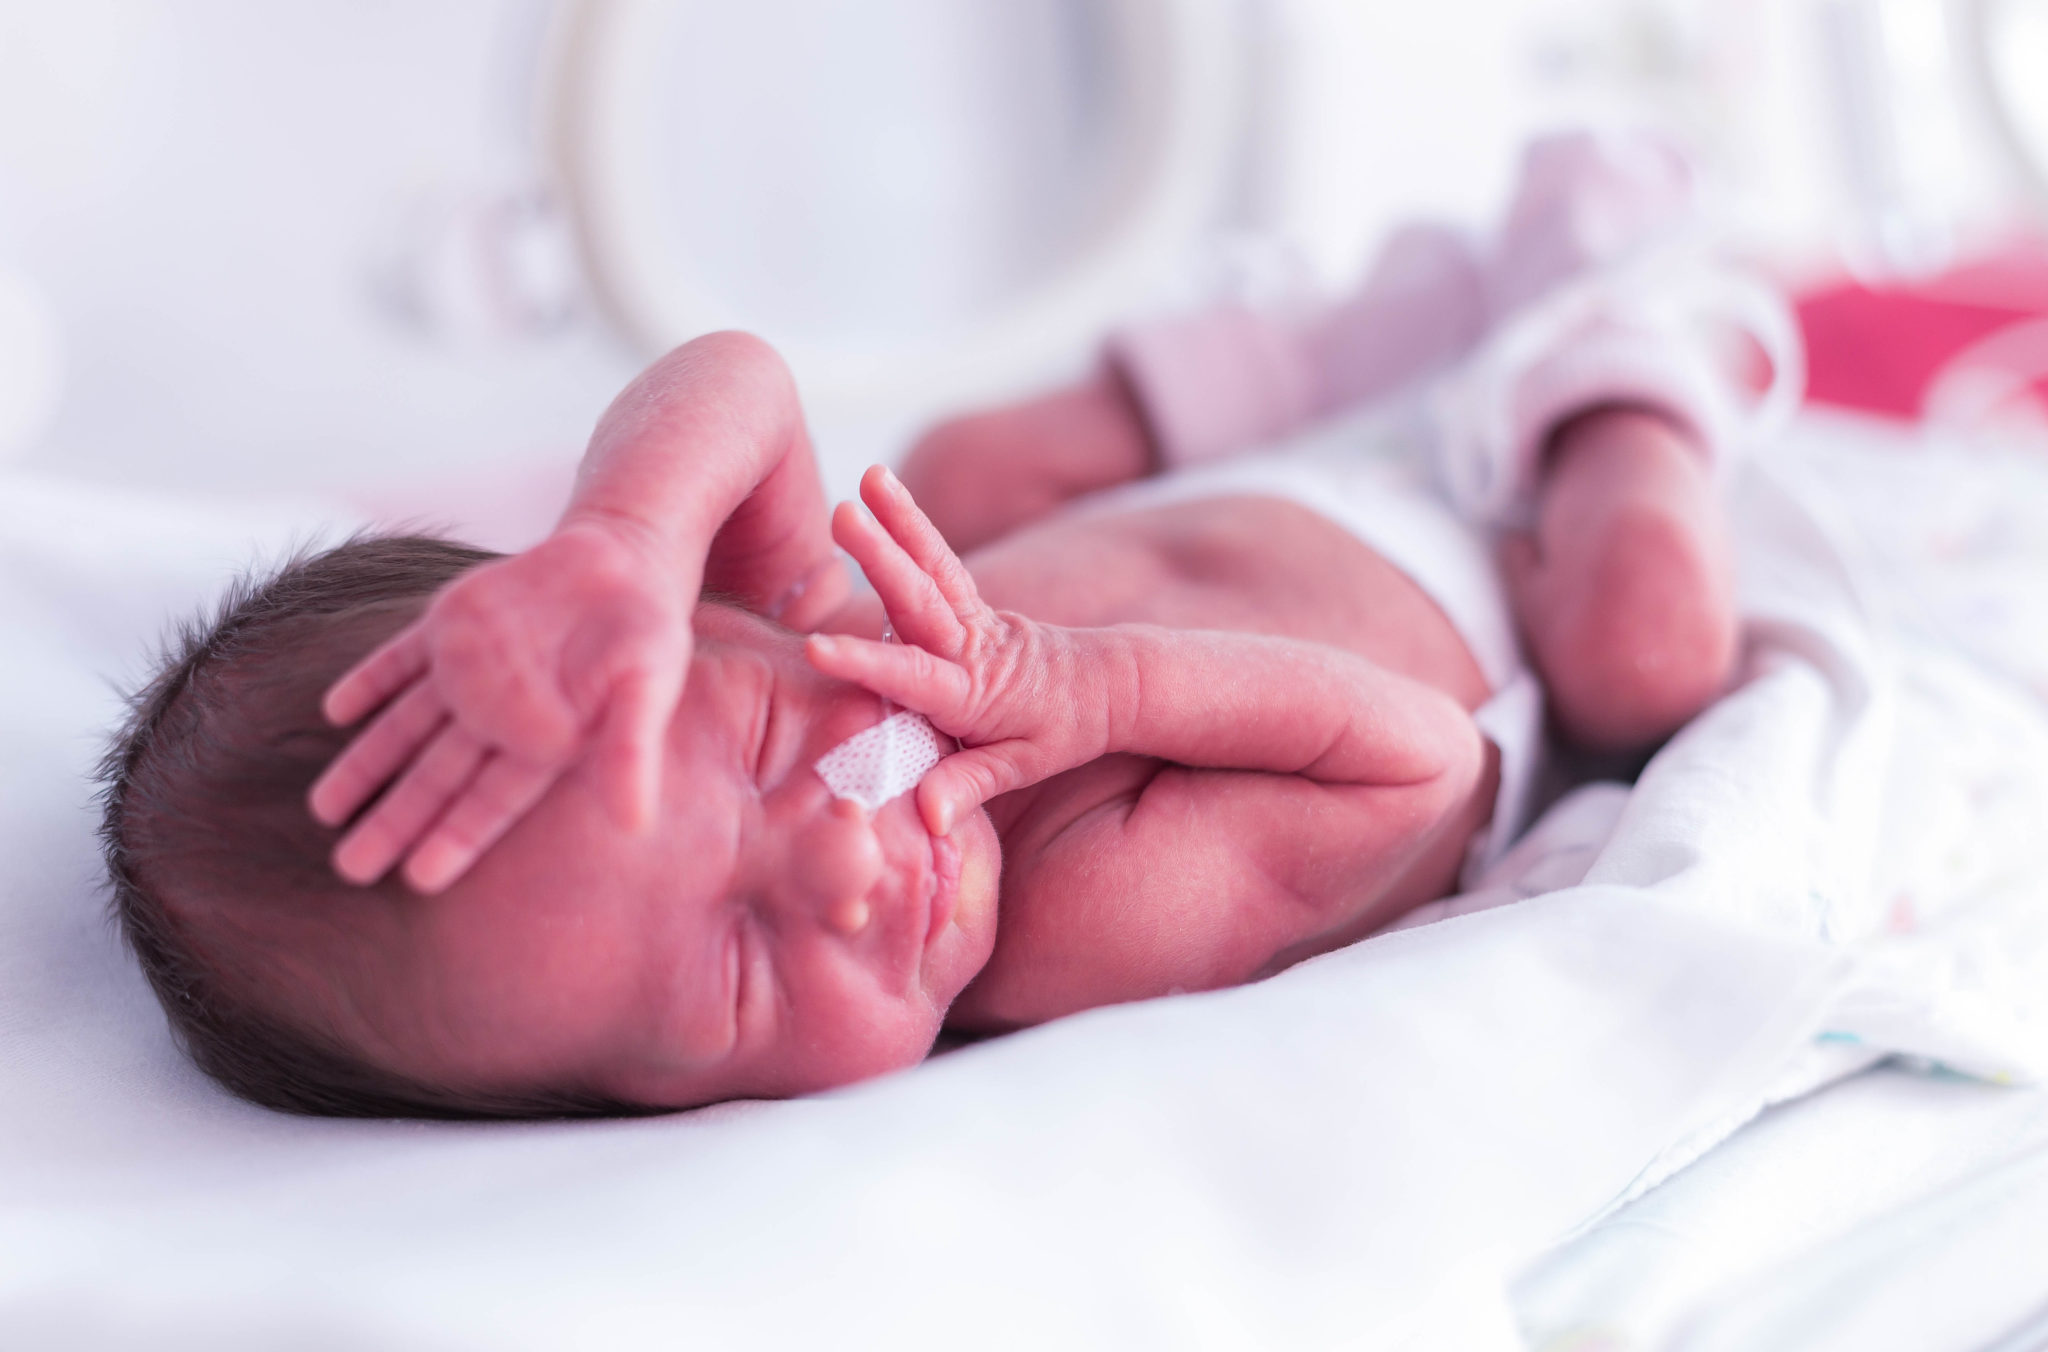 Premature newborn baby girl